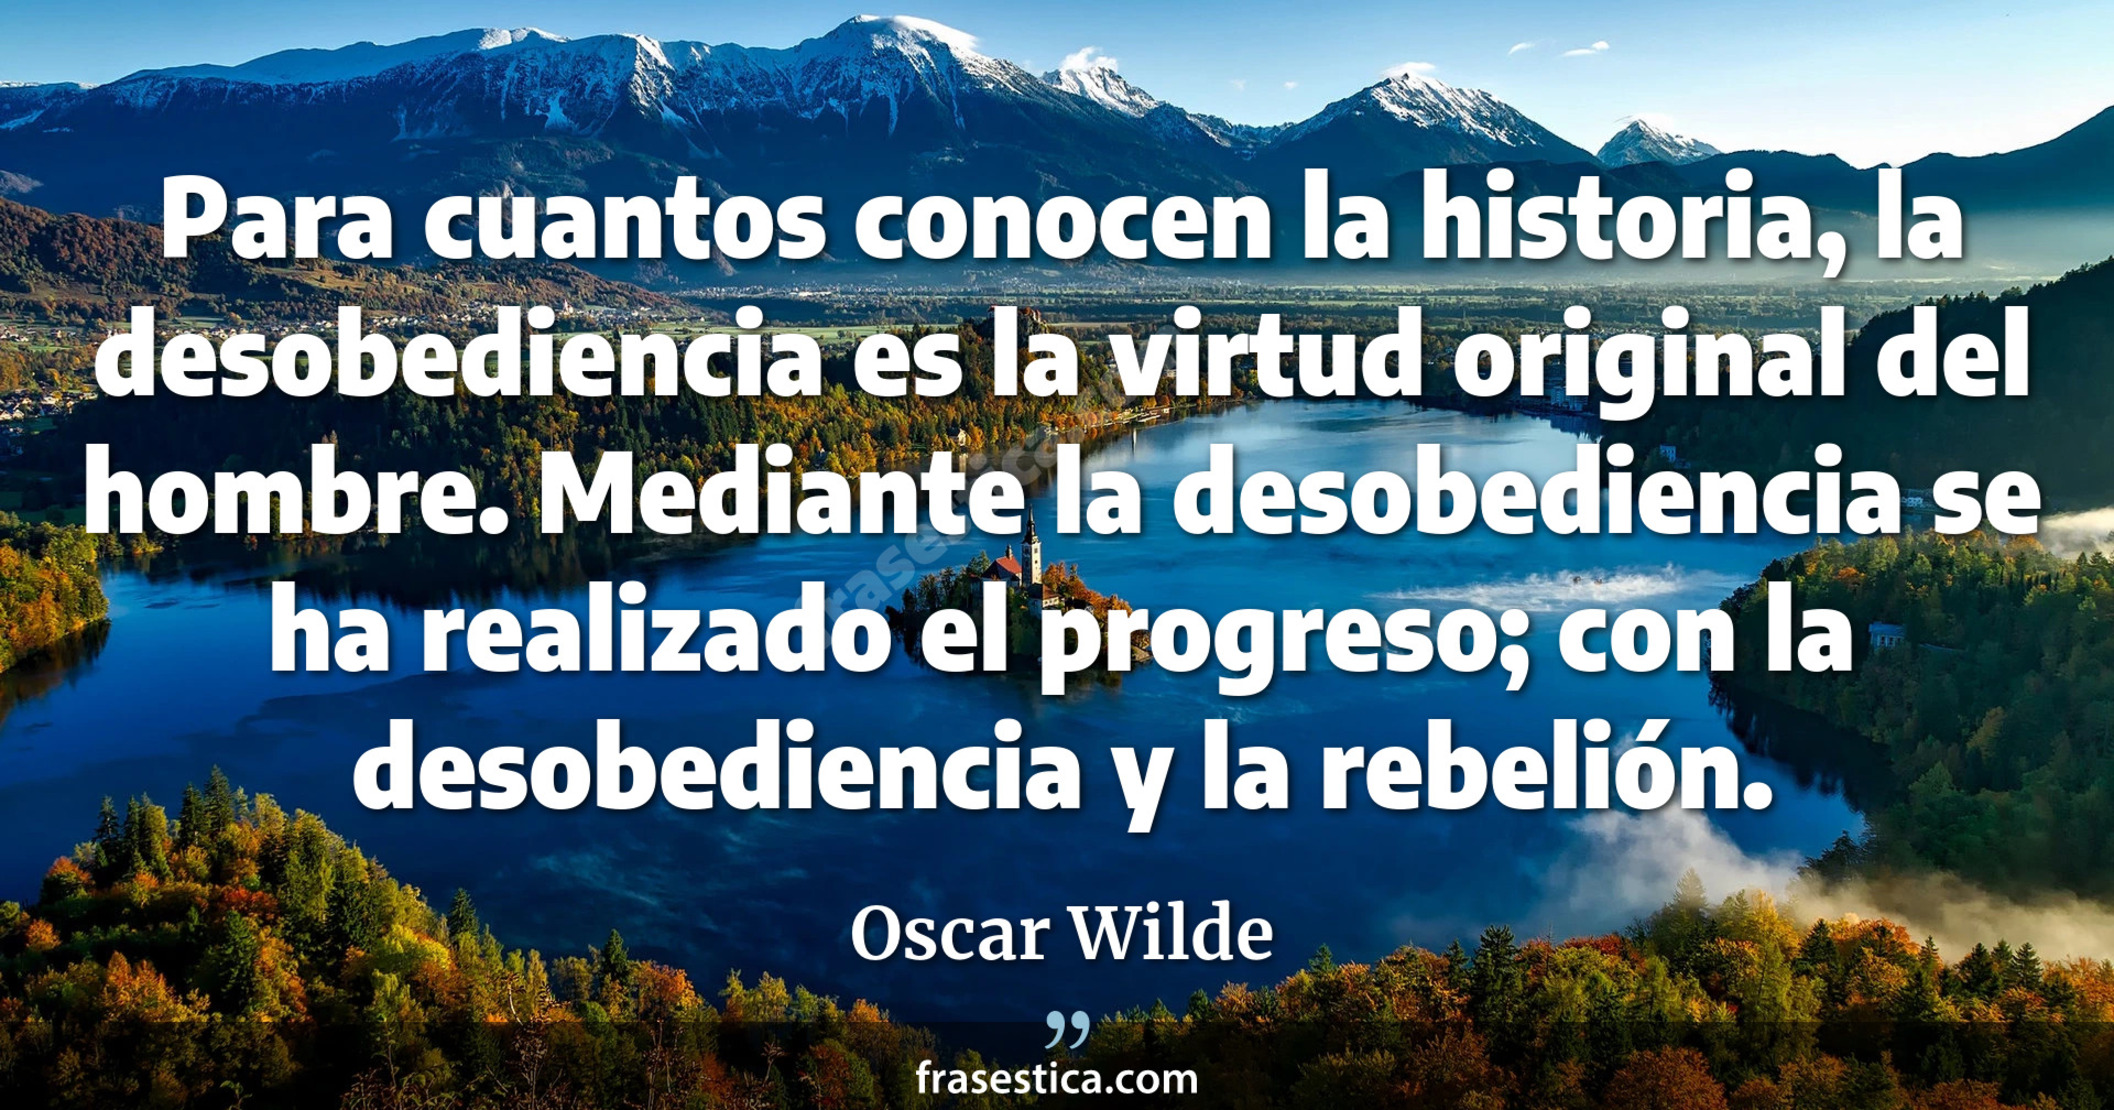 Para cuantos conocen la historia, la desobediencia es la virtud original del hombre. Mediante la desobediencia se ha realizado el progreso; con la desobediencia y la rebelión. - Oscar Wilde